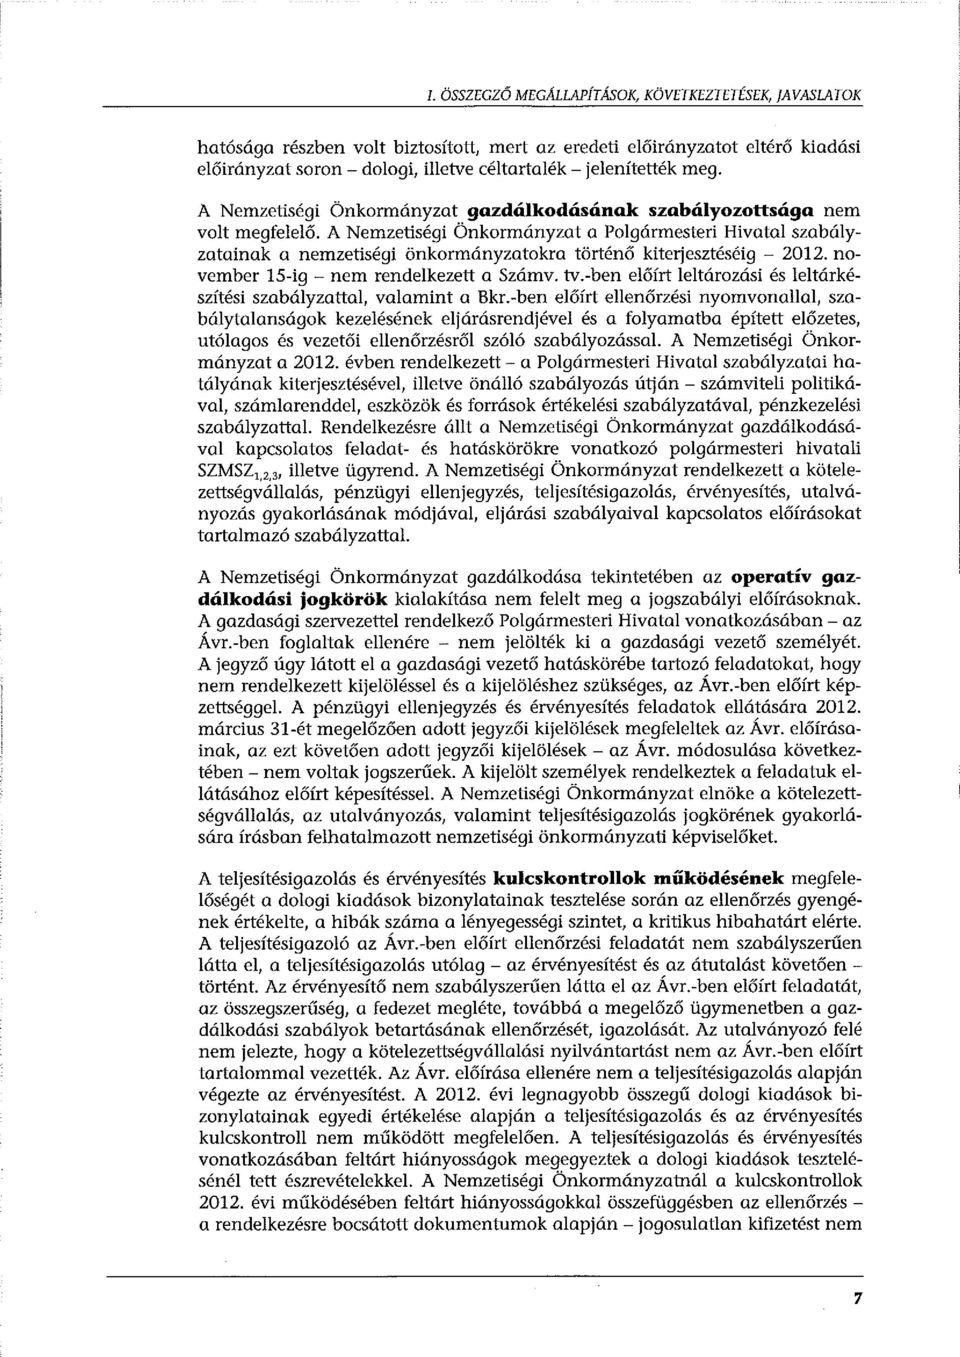 A Nemzetiségi Önkormányzat a Polgármesteri Hivatal szabályzatainak a nemzetiségi önkormányzatokra történő kiterjesztéséig - 2012. november 15-ig - nem rendelkezett a Számv. tv.